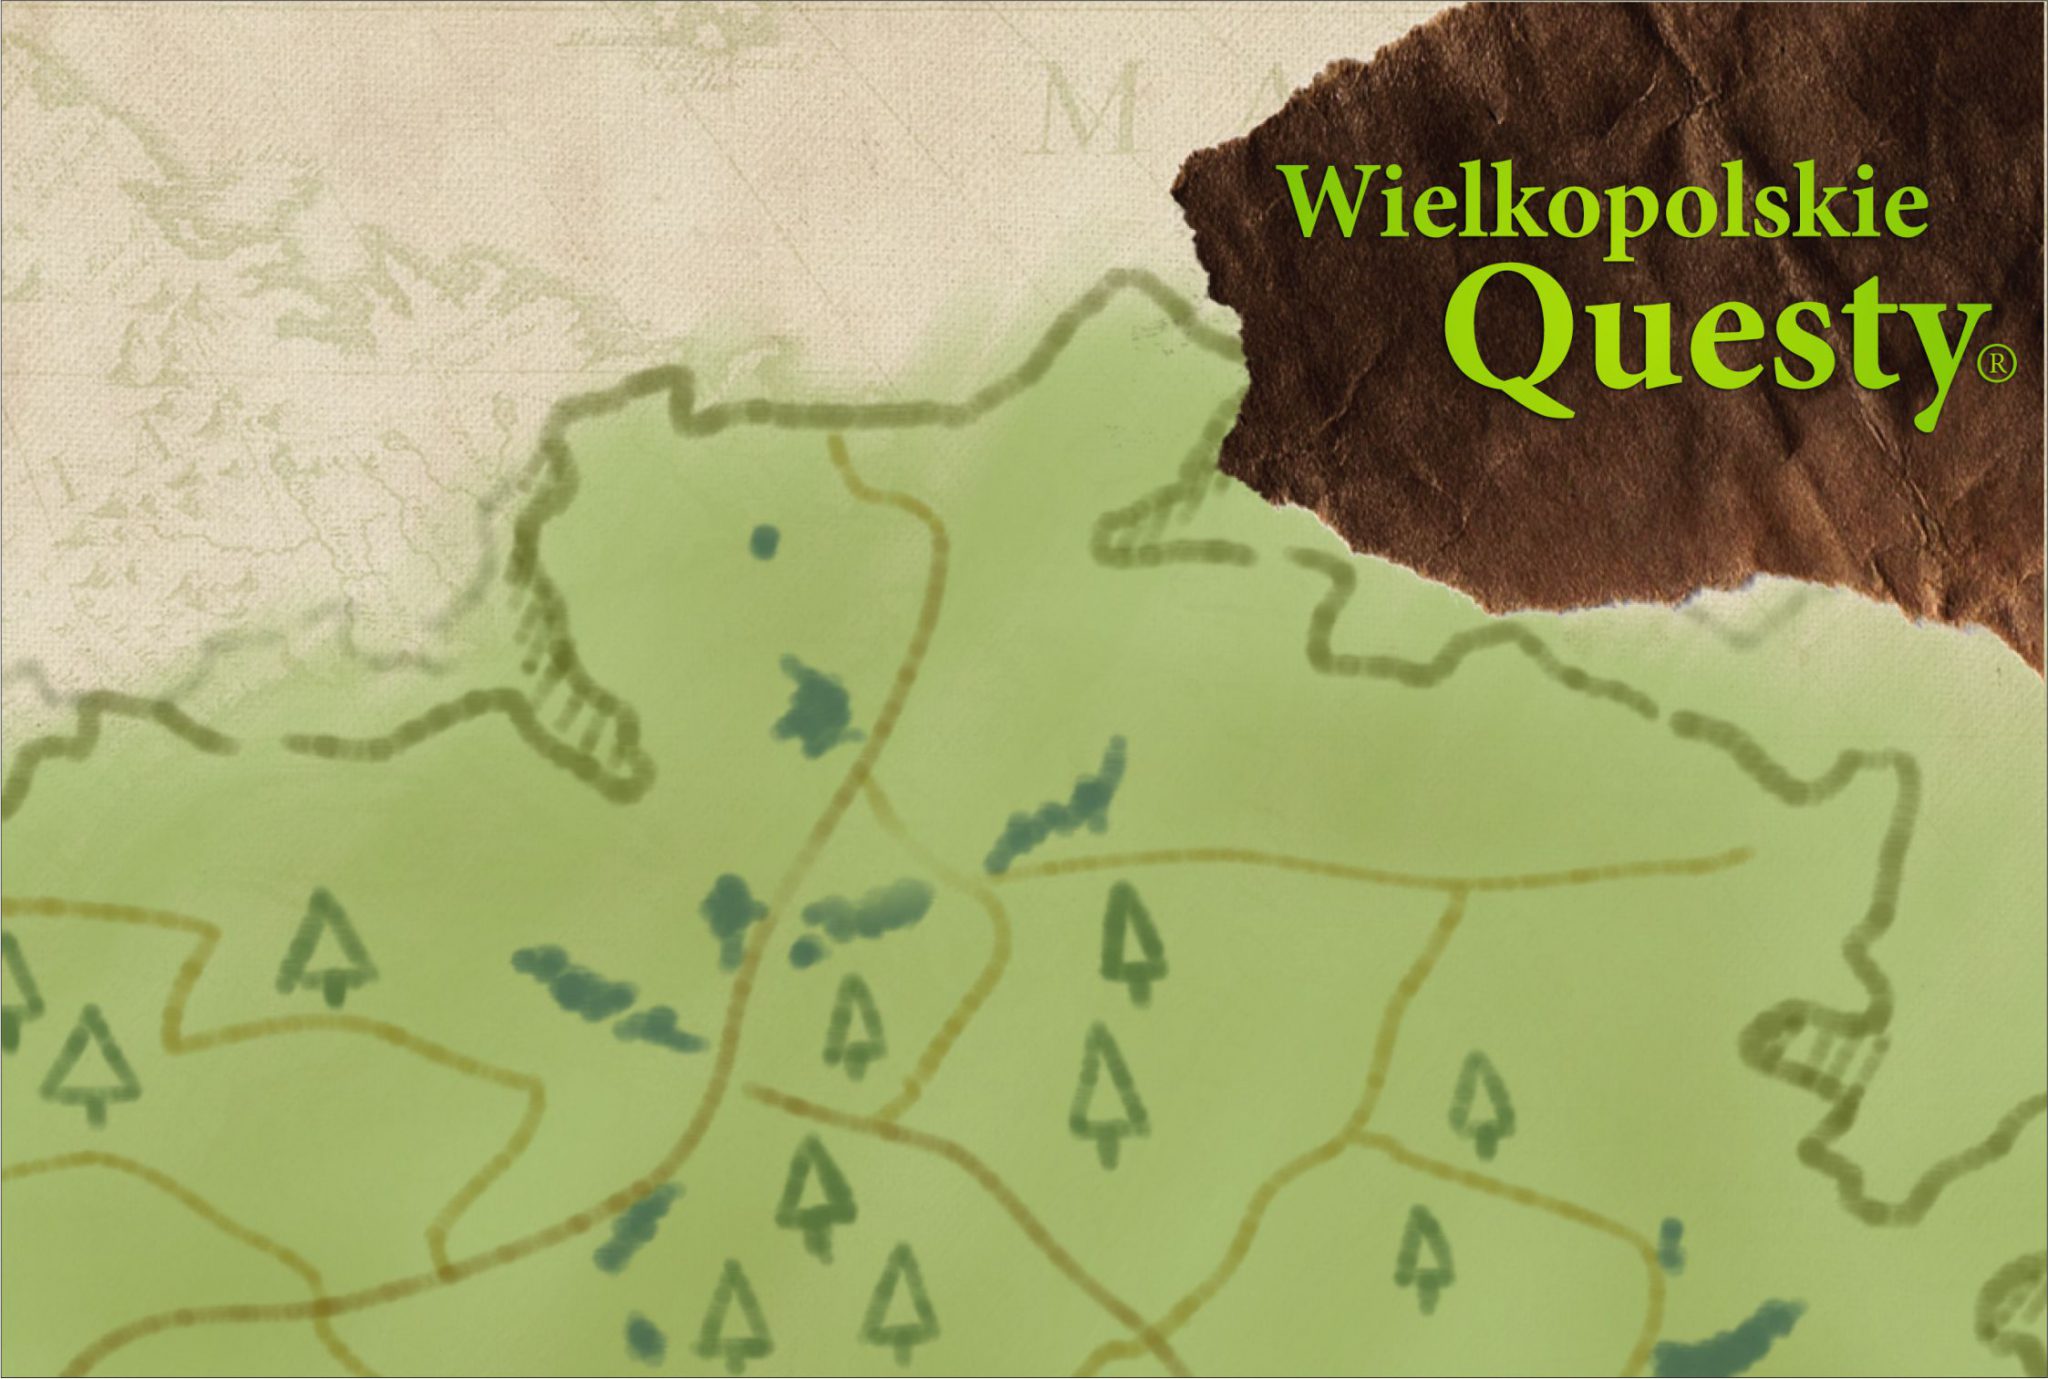 fragment topograficznej mapki lasu i tekst Wielkopolskie Questy